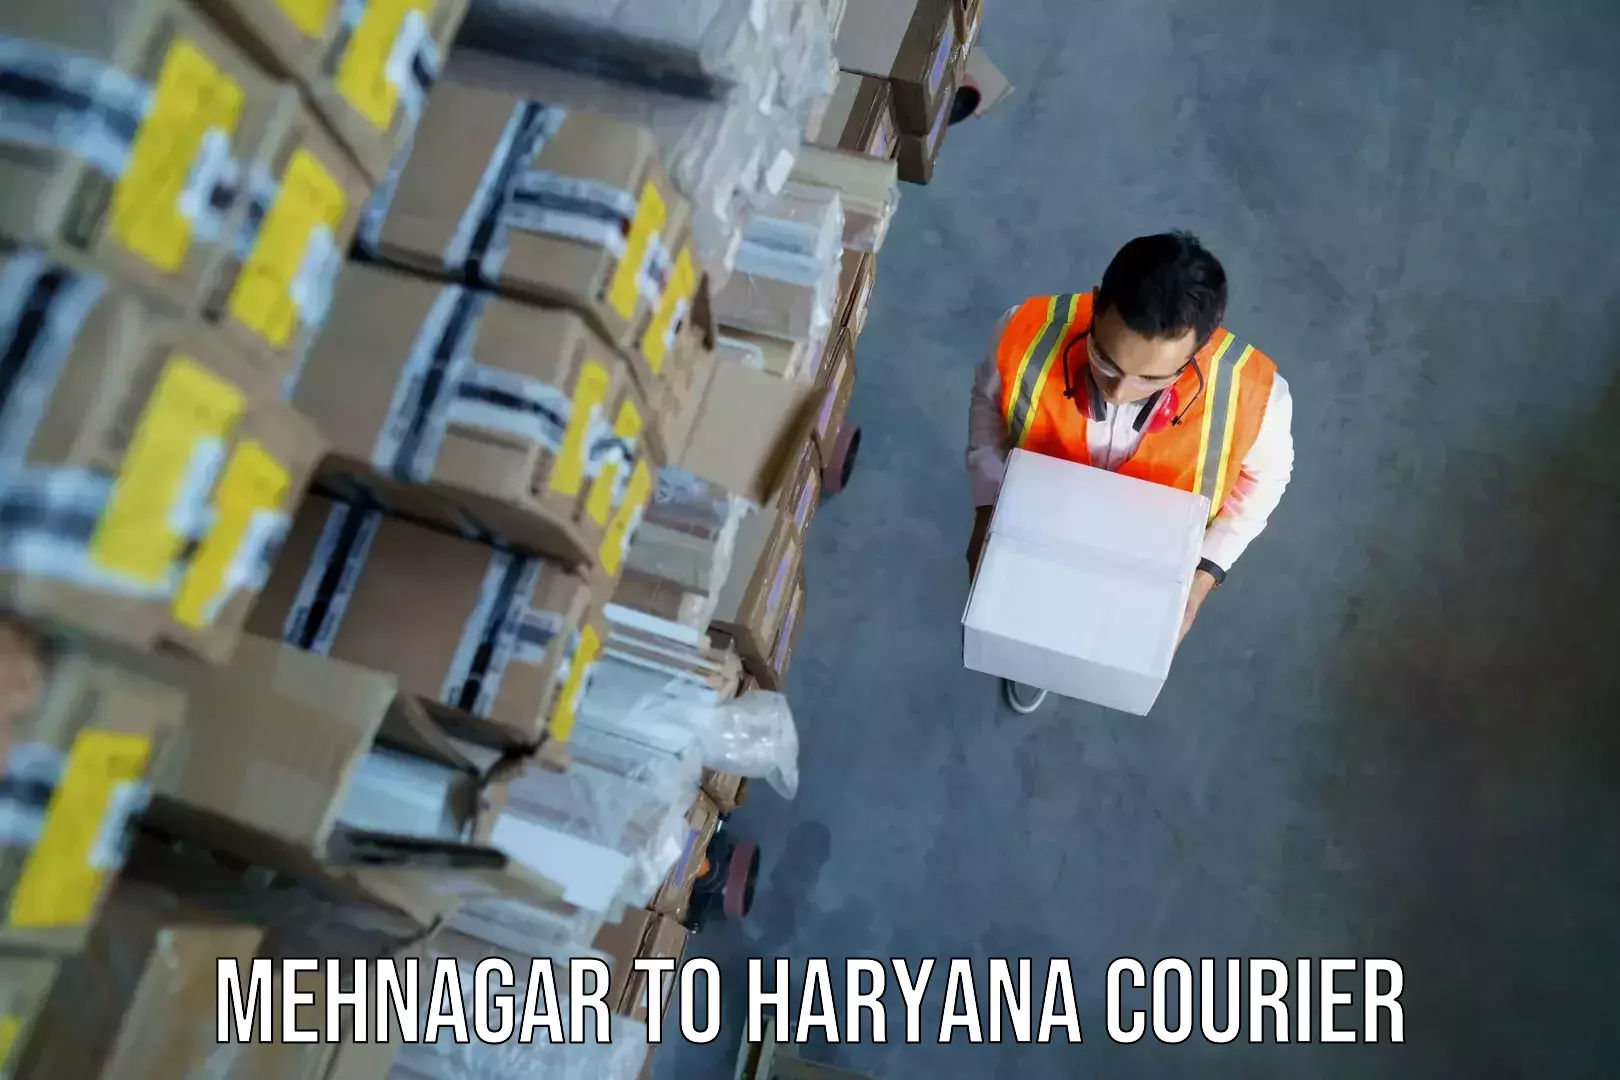 Baggage shipping experience in Mehnagar to Rewari